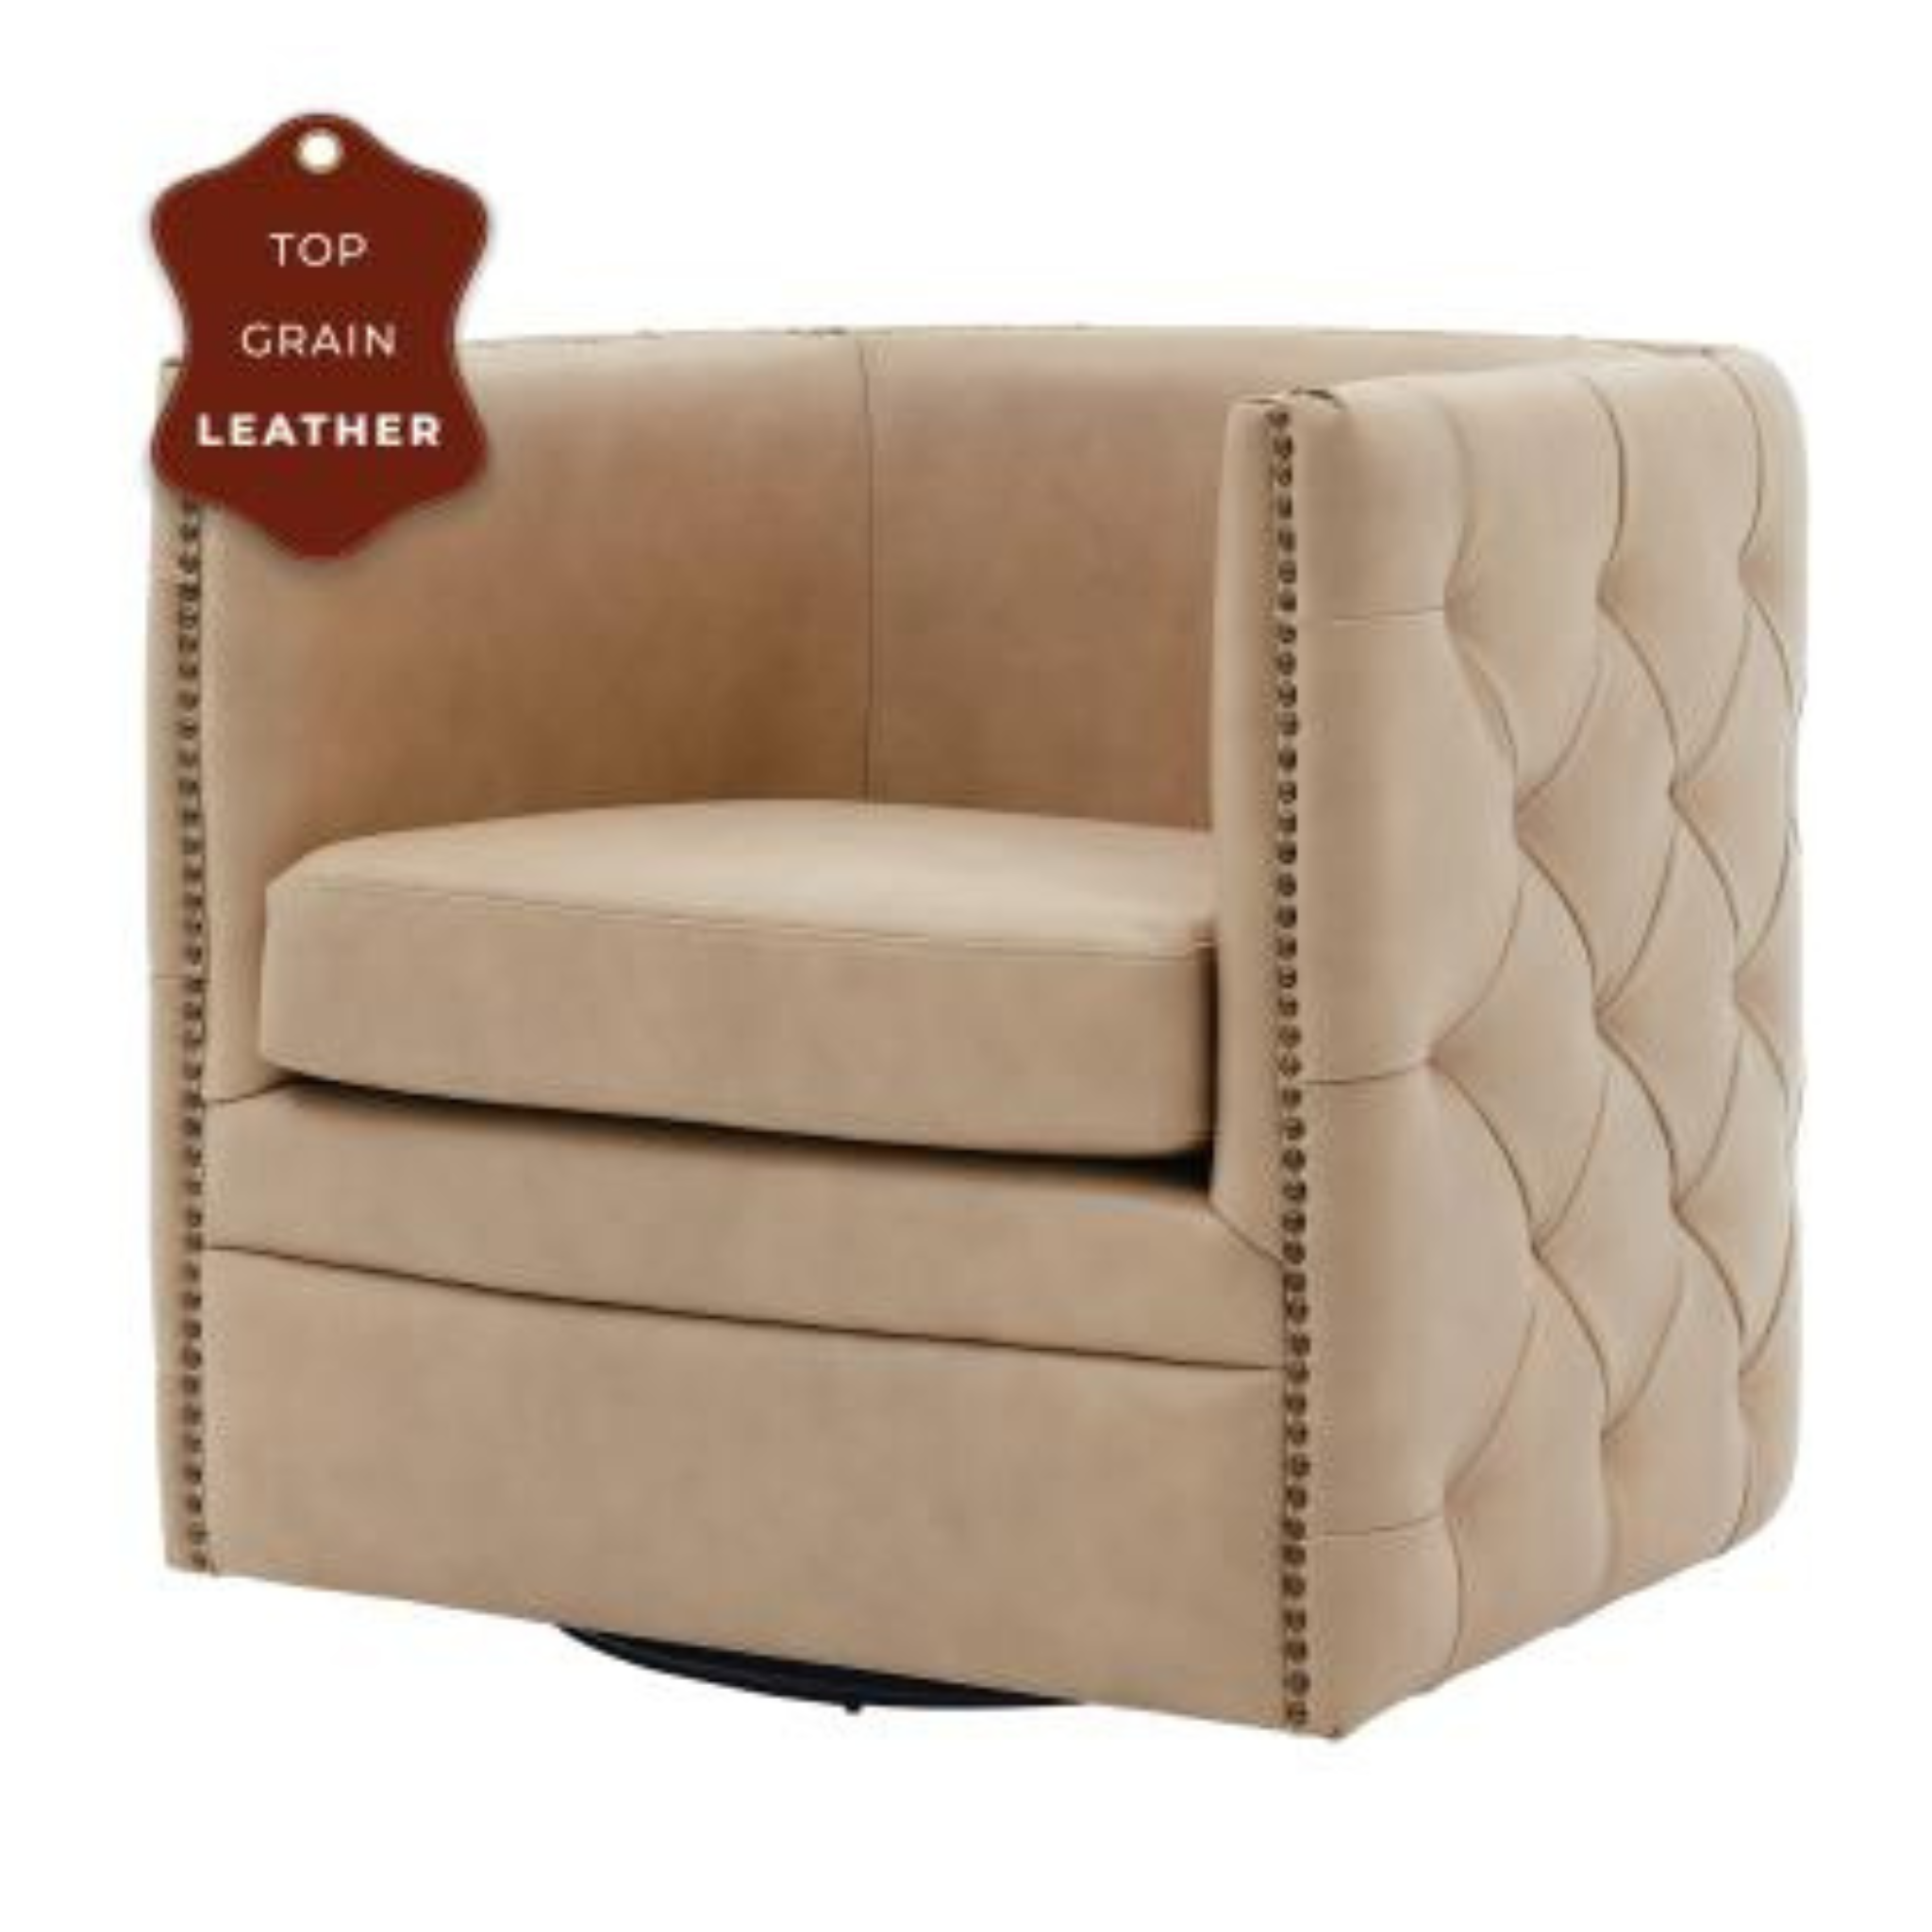 Belfield Top Grain Leather Swivel Chair